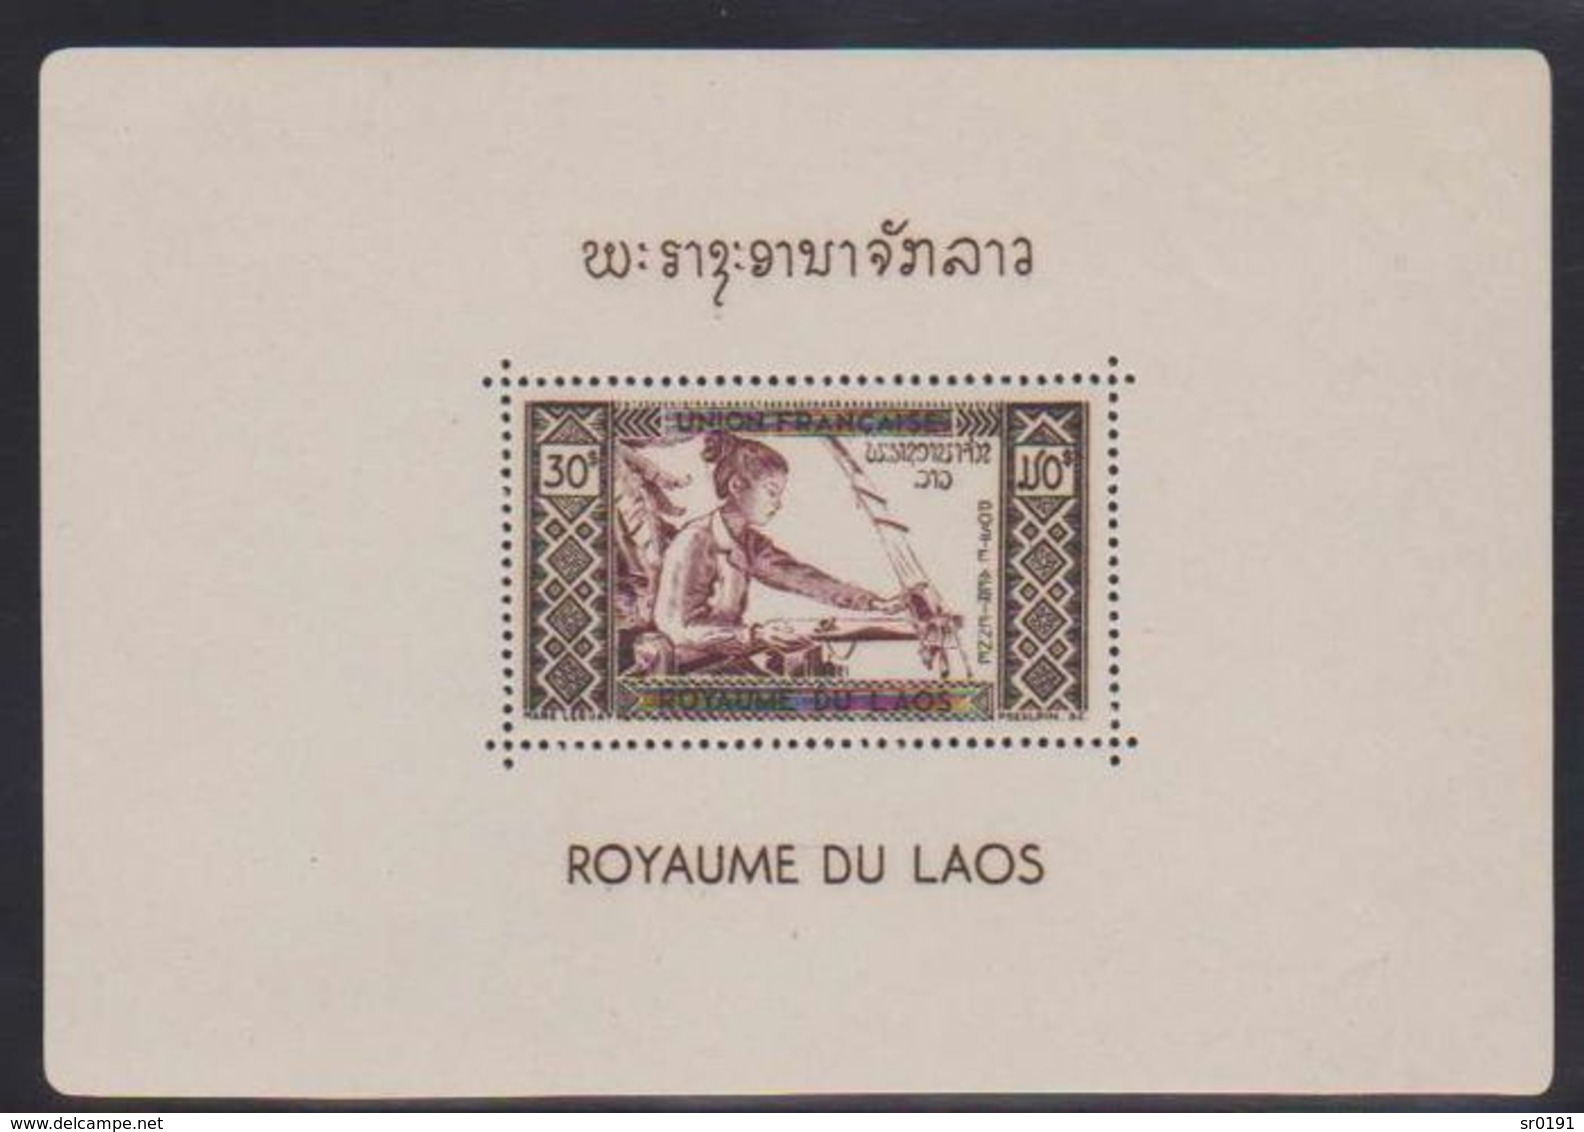 Laos 1952 - 26 BLOCS Série Complète Bloc Feuillet Yvert N° 1 à 26  neuf sans charniere